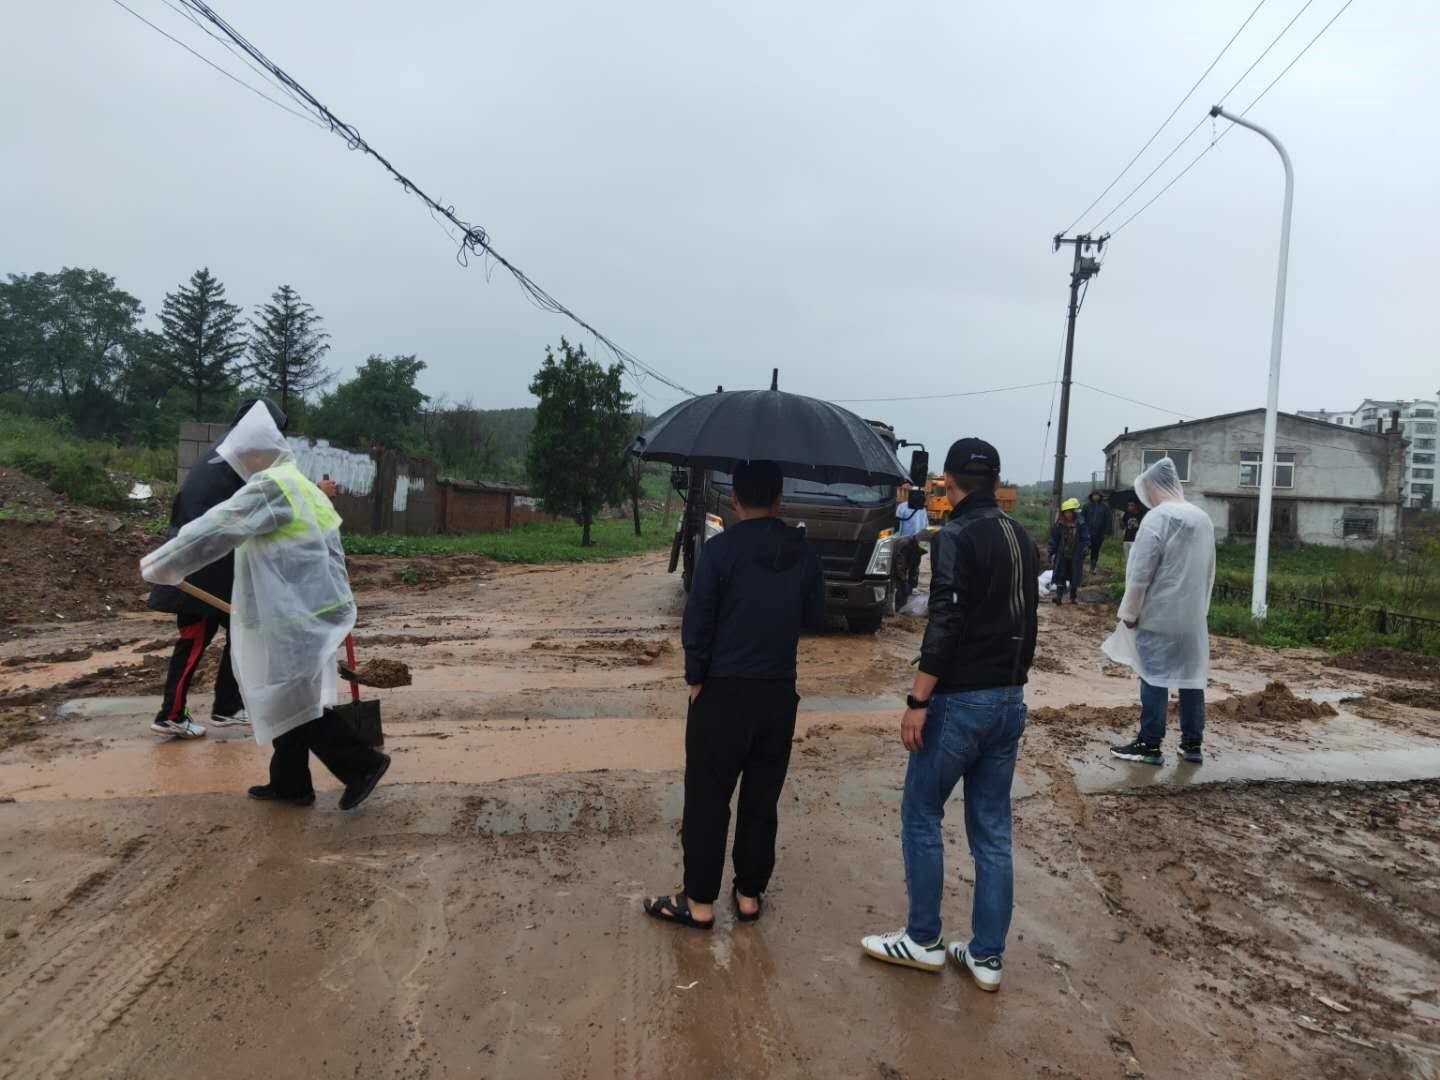 延吉市住建局全面落实防汛工作要求
全力做好台风“美莎克”应对工作